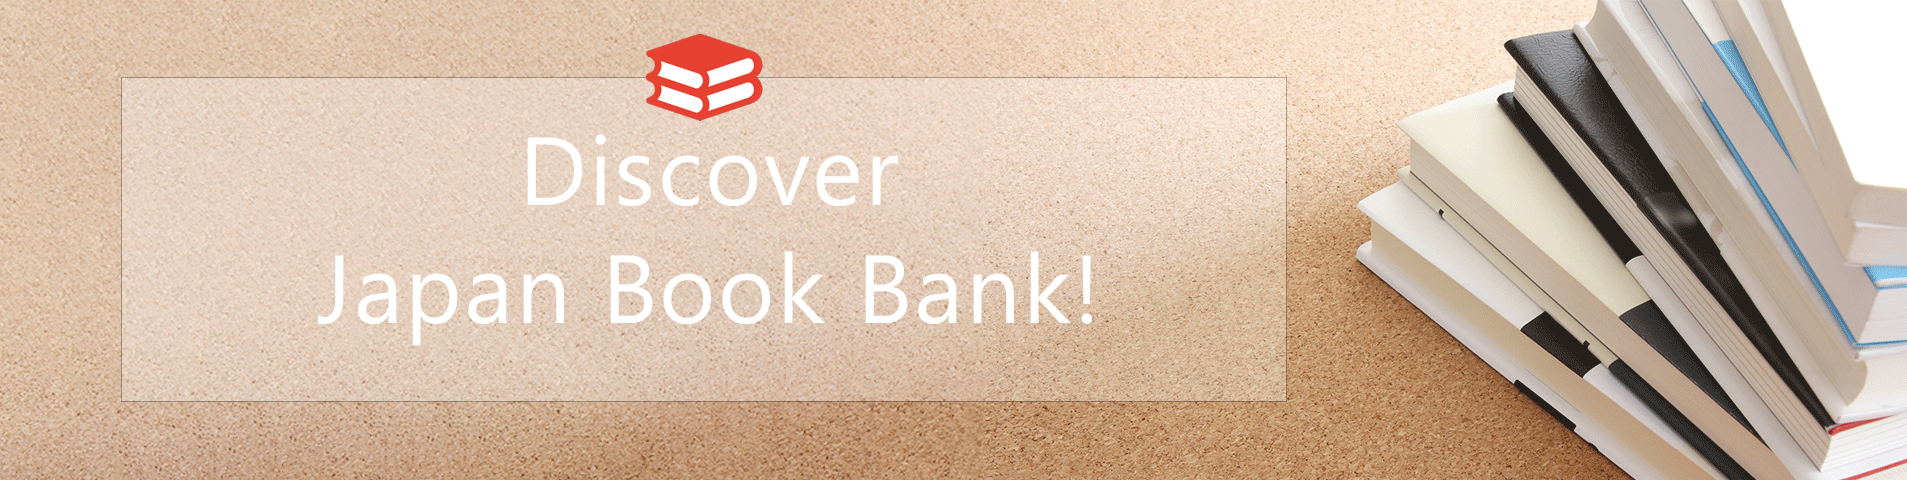 Japan Book Bank